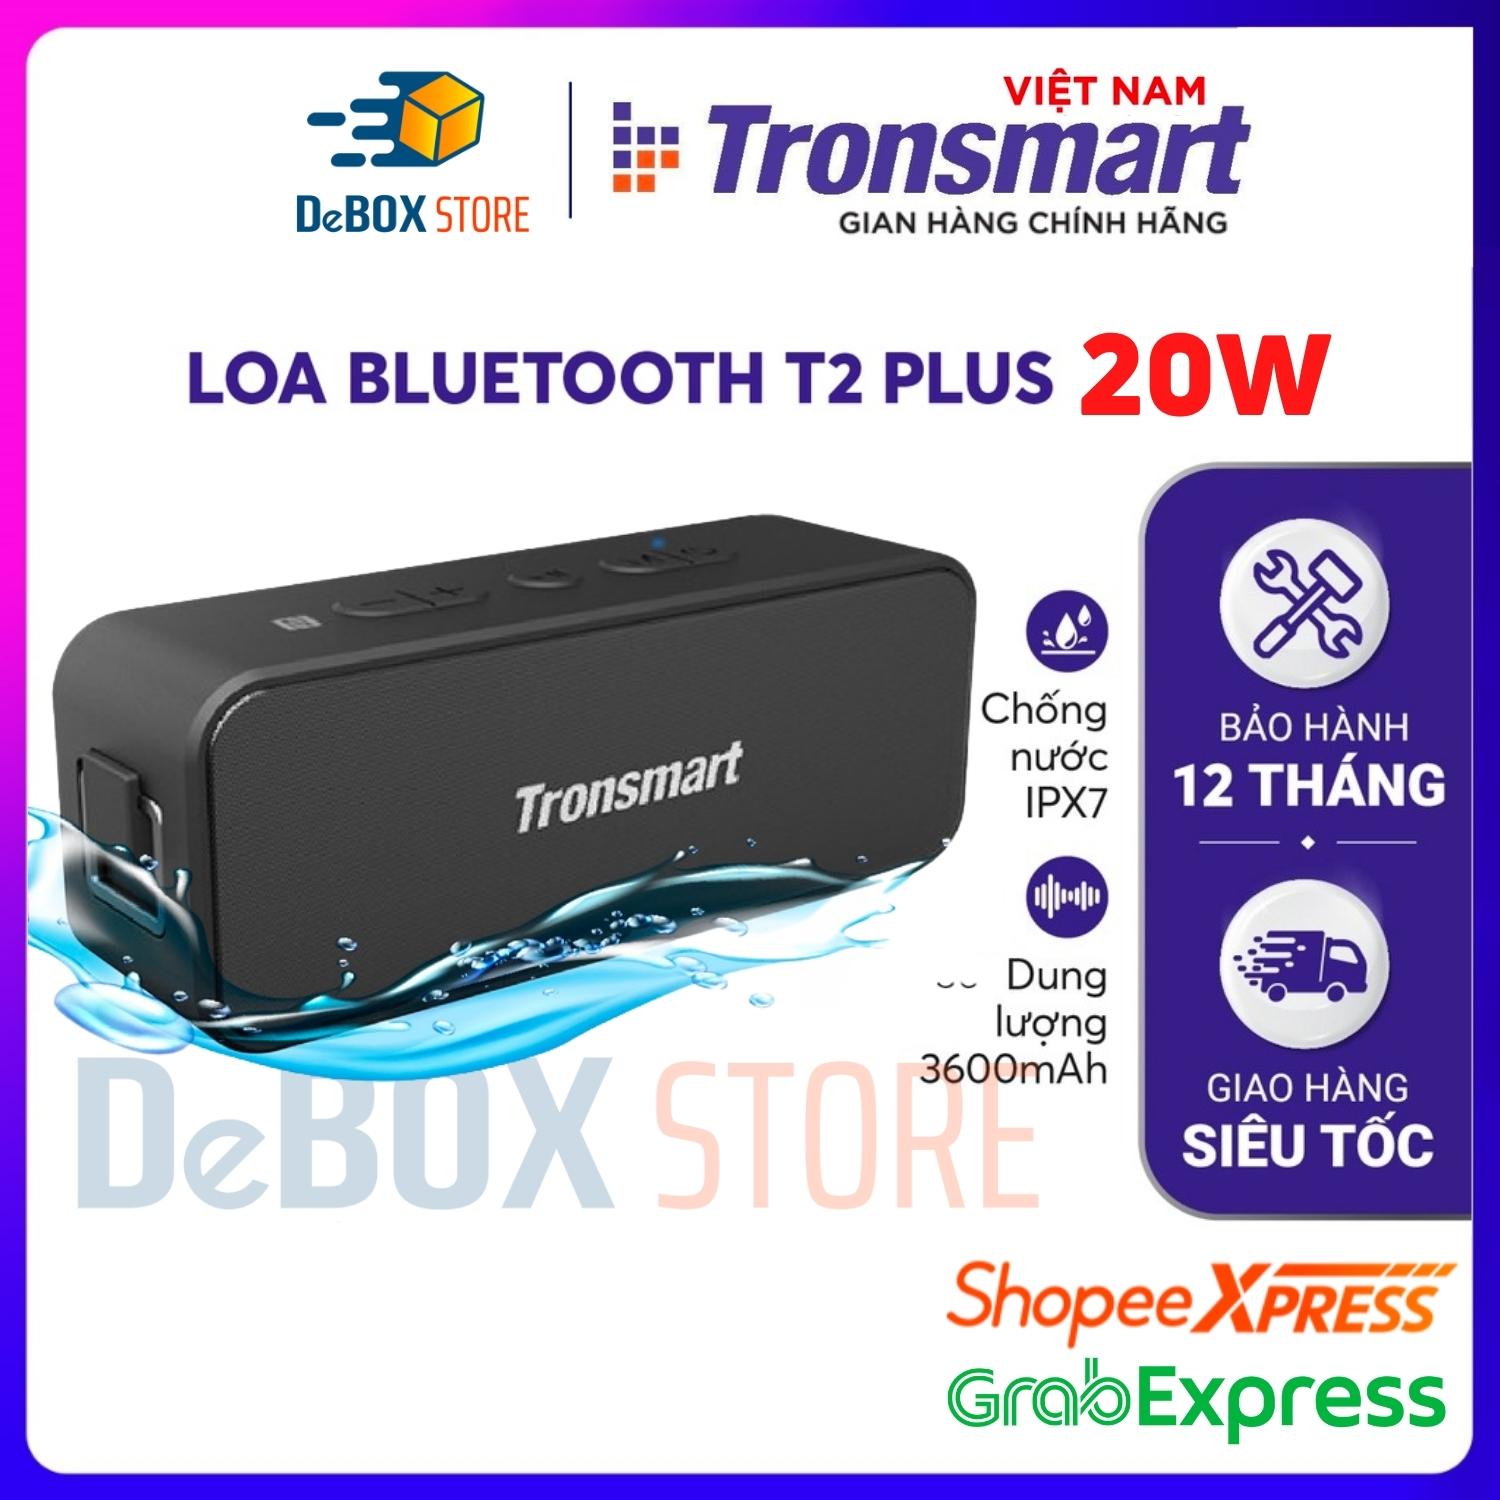 Loa Bluetooth Tronsmart Element T2 Plus 20W, BT 5.0, Chống nước IPX7, Âm thanh vòm 360 - Hàng Chính Hãng